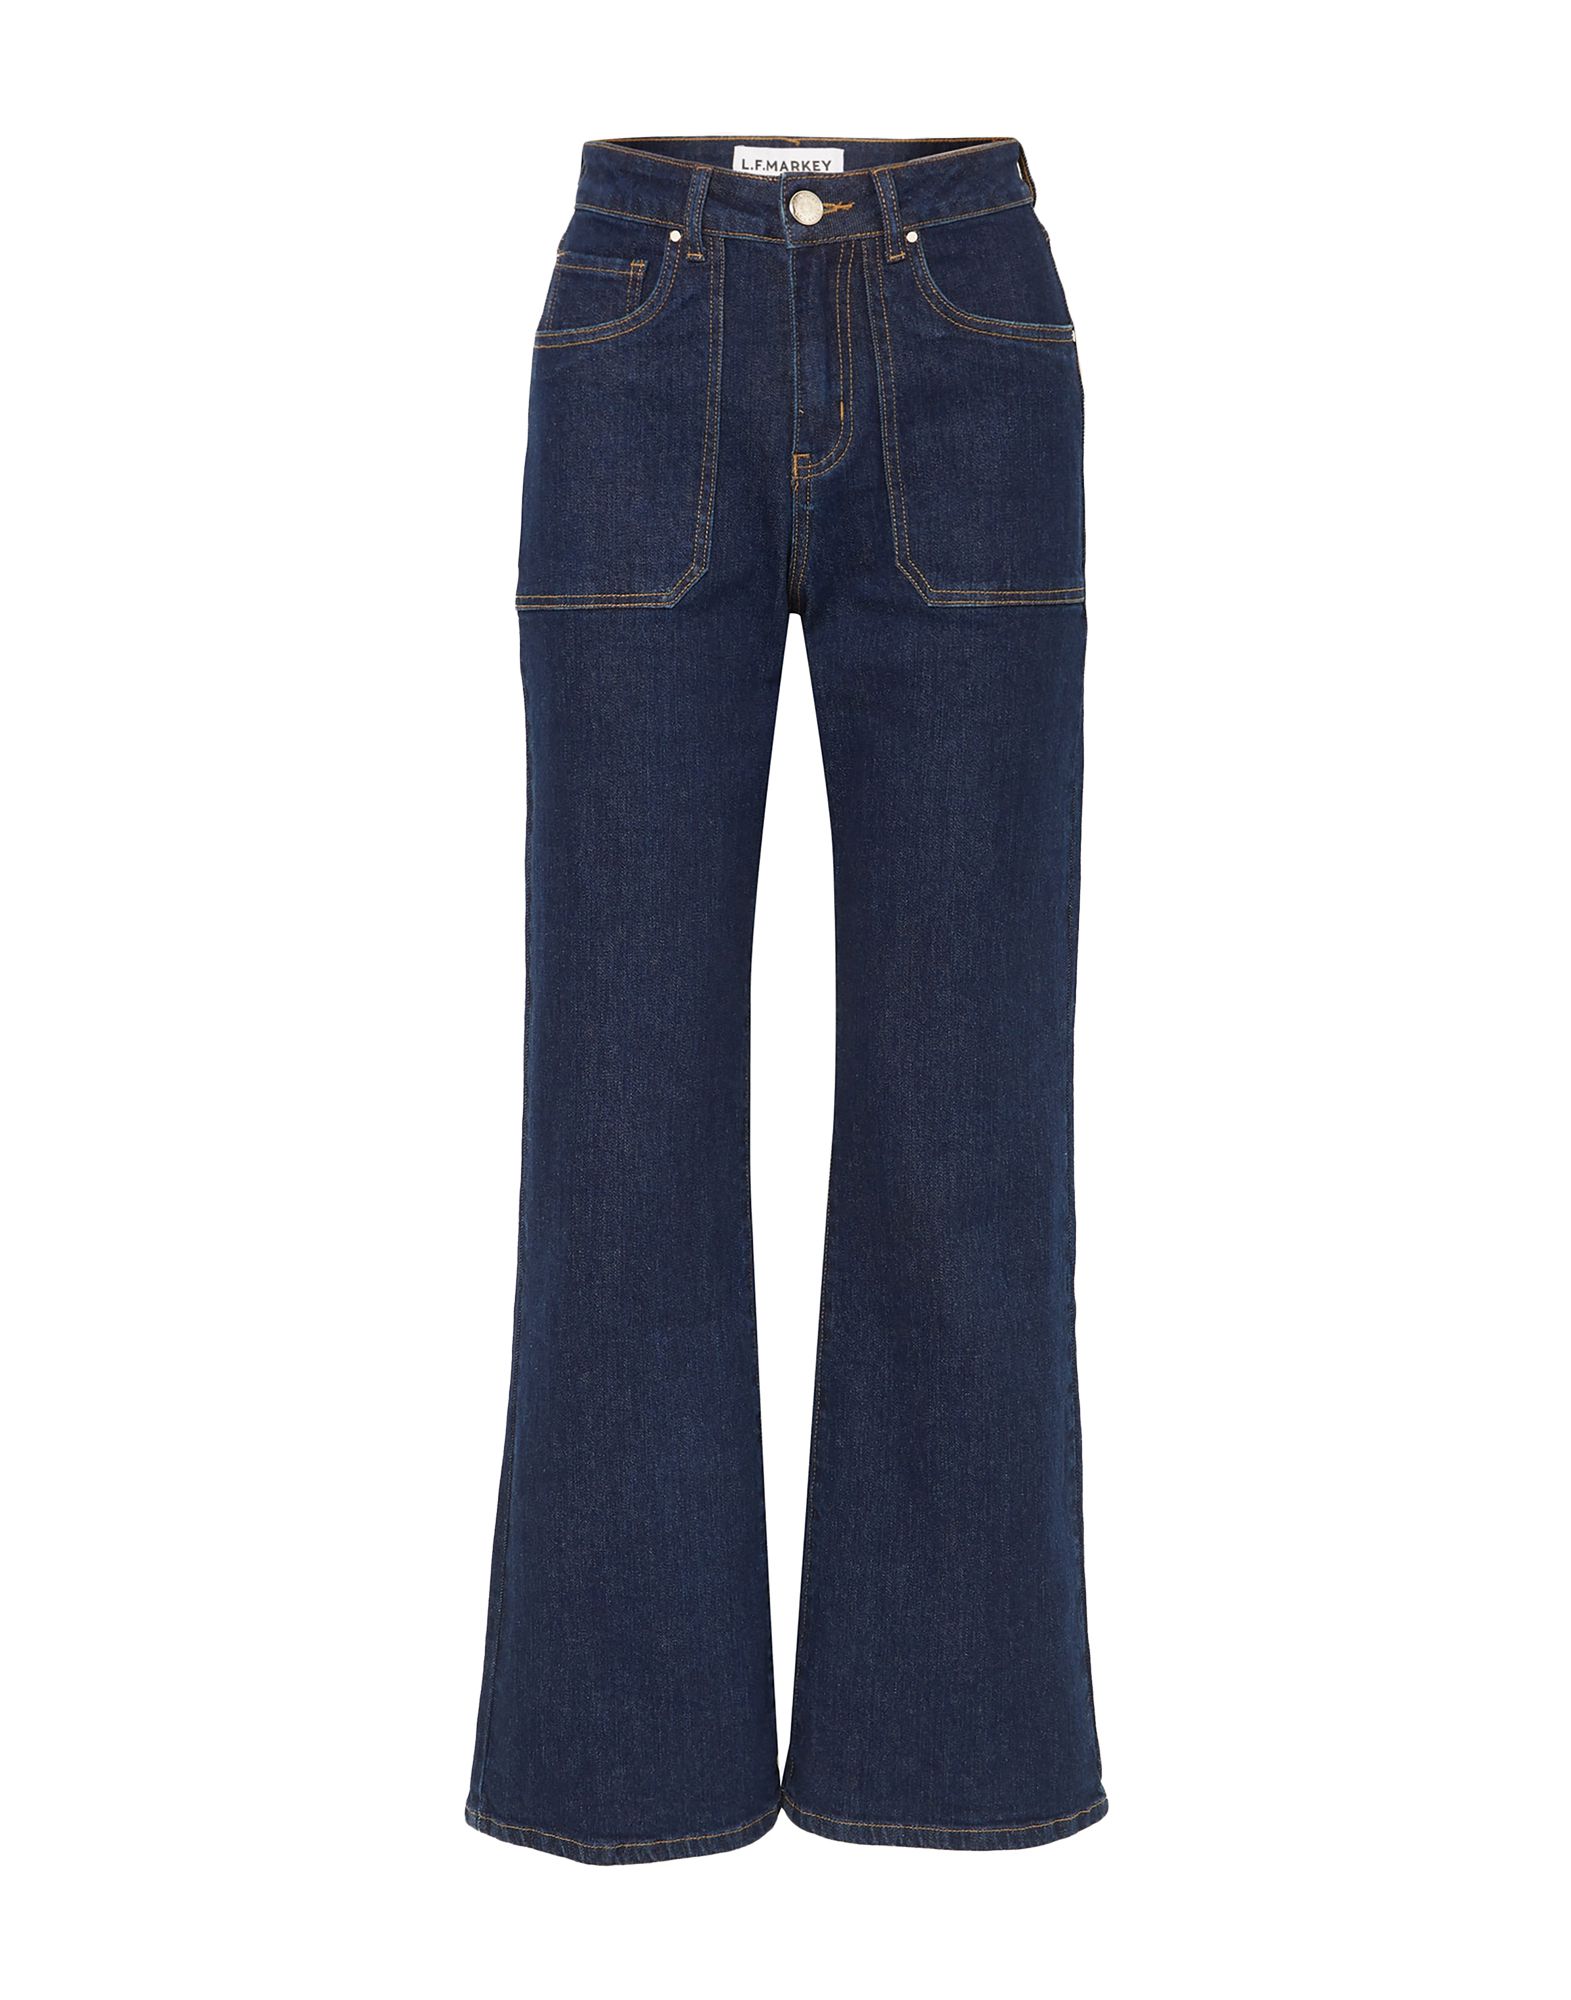 L.F. MARKEY Jeans